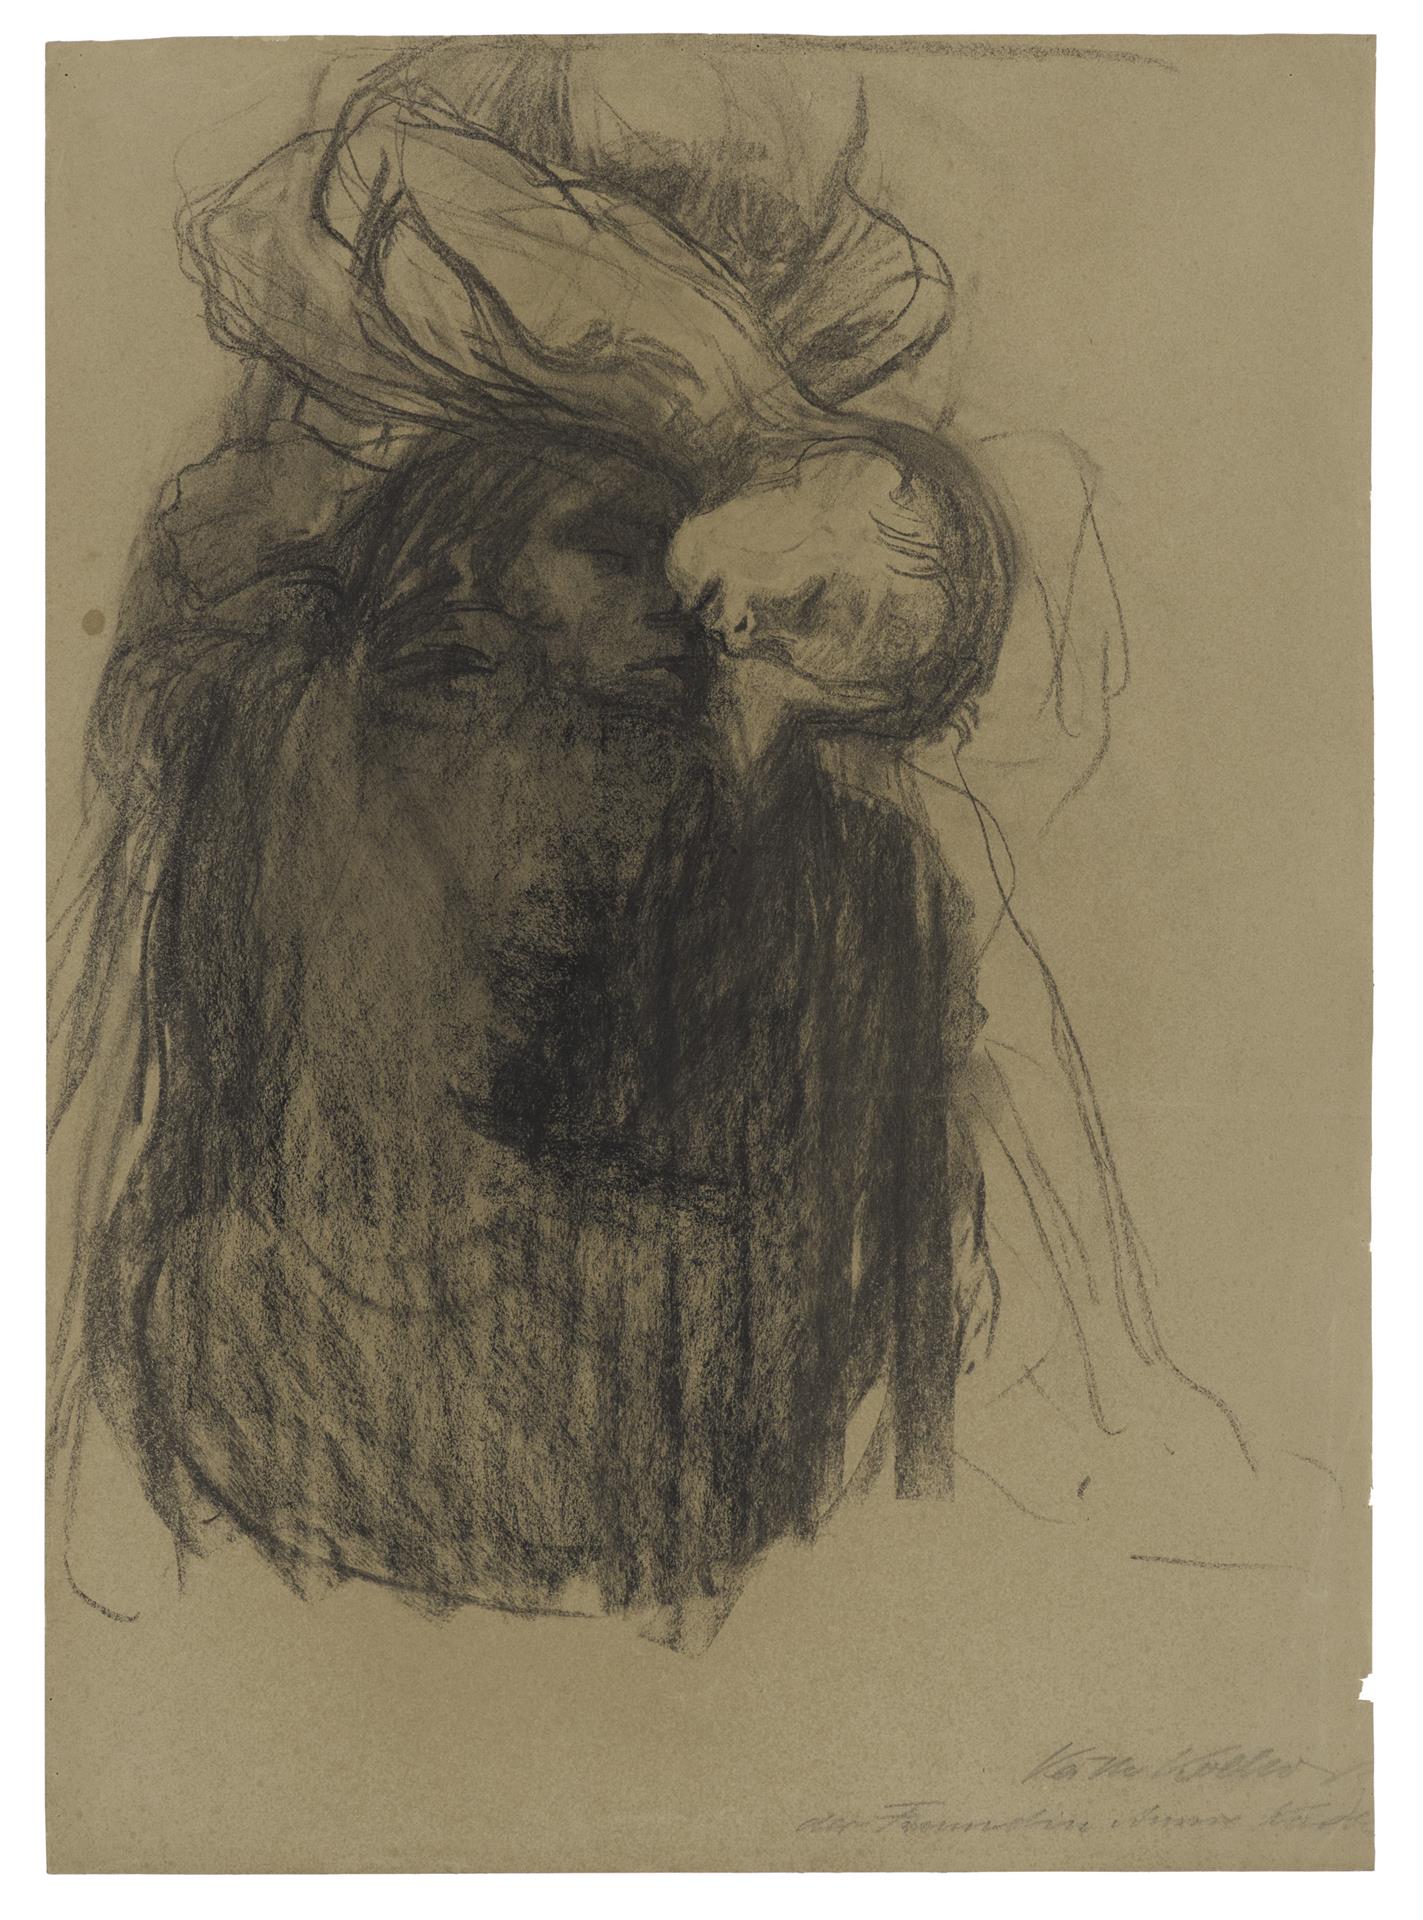 Käthe Kollwitz, Death, Woman and Child, 1910, black crayon, blotted, on brownish paper, NT 609, Cologne Kollwitz Collection © Käthe Kollwitz Museum Köln